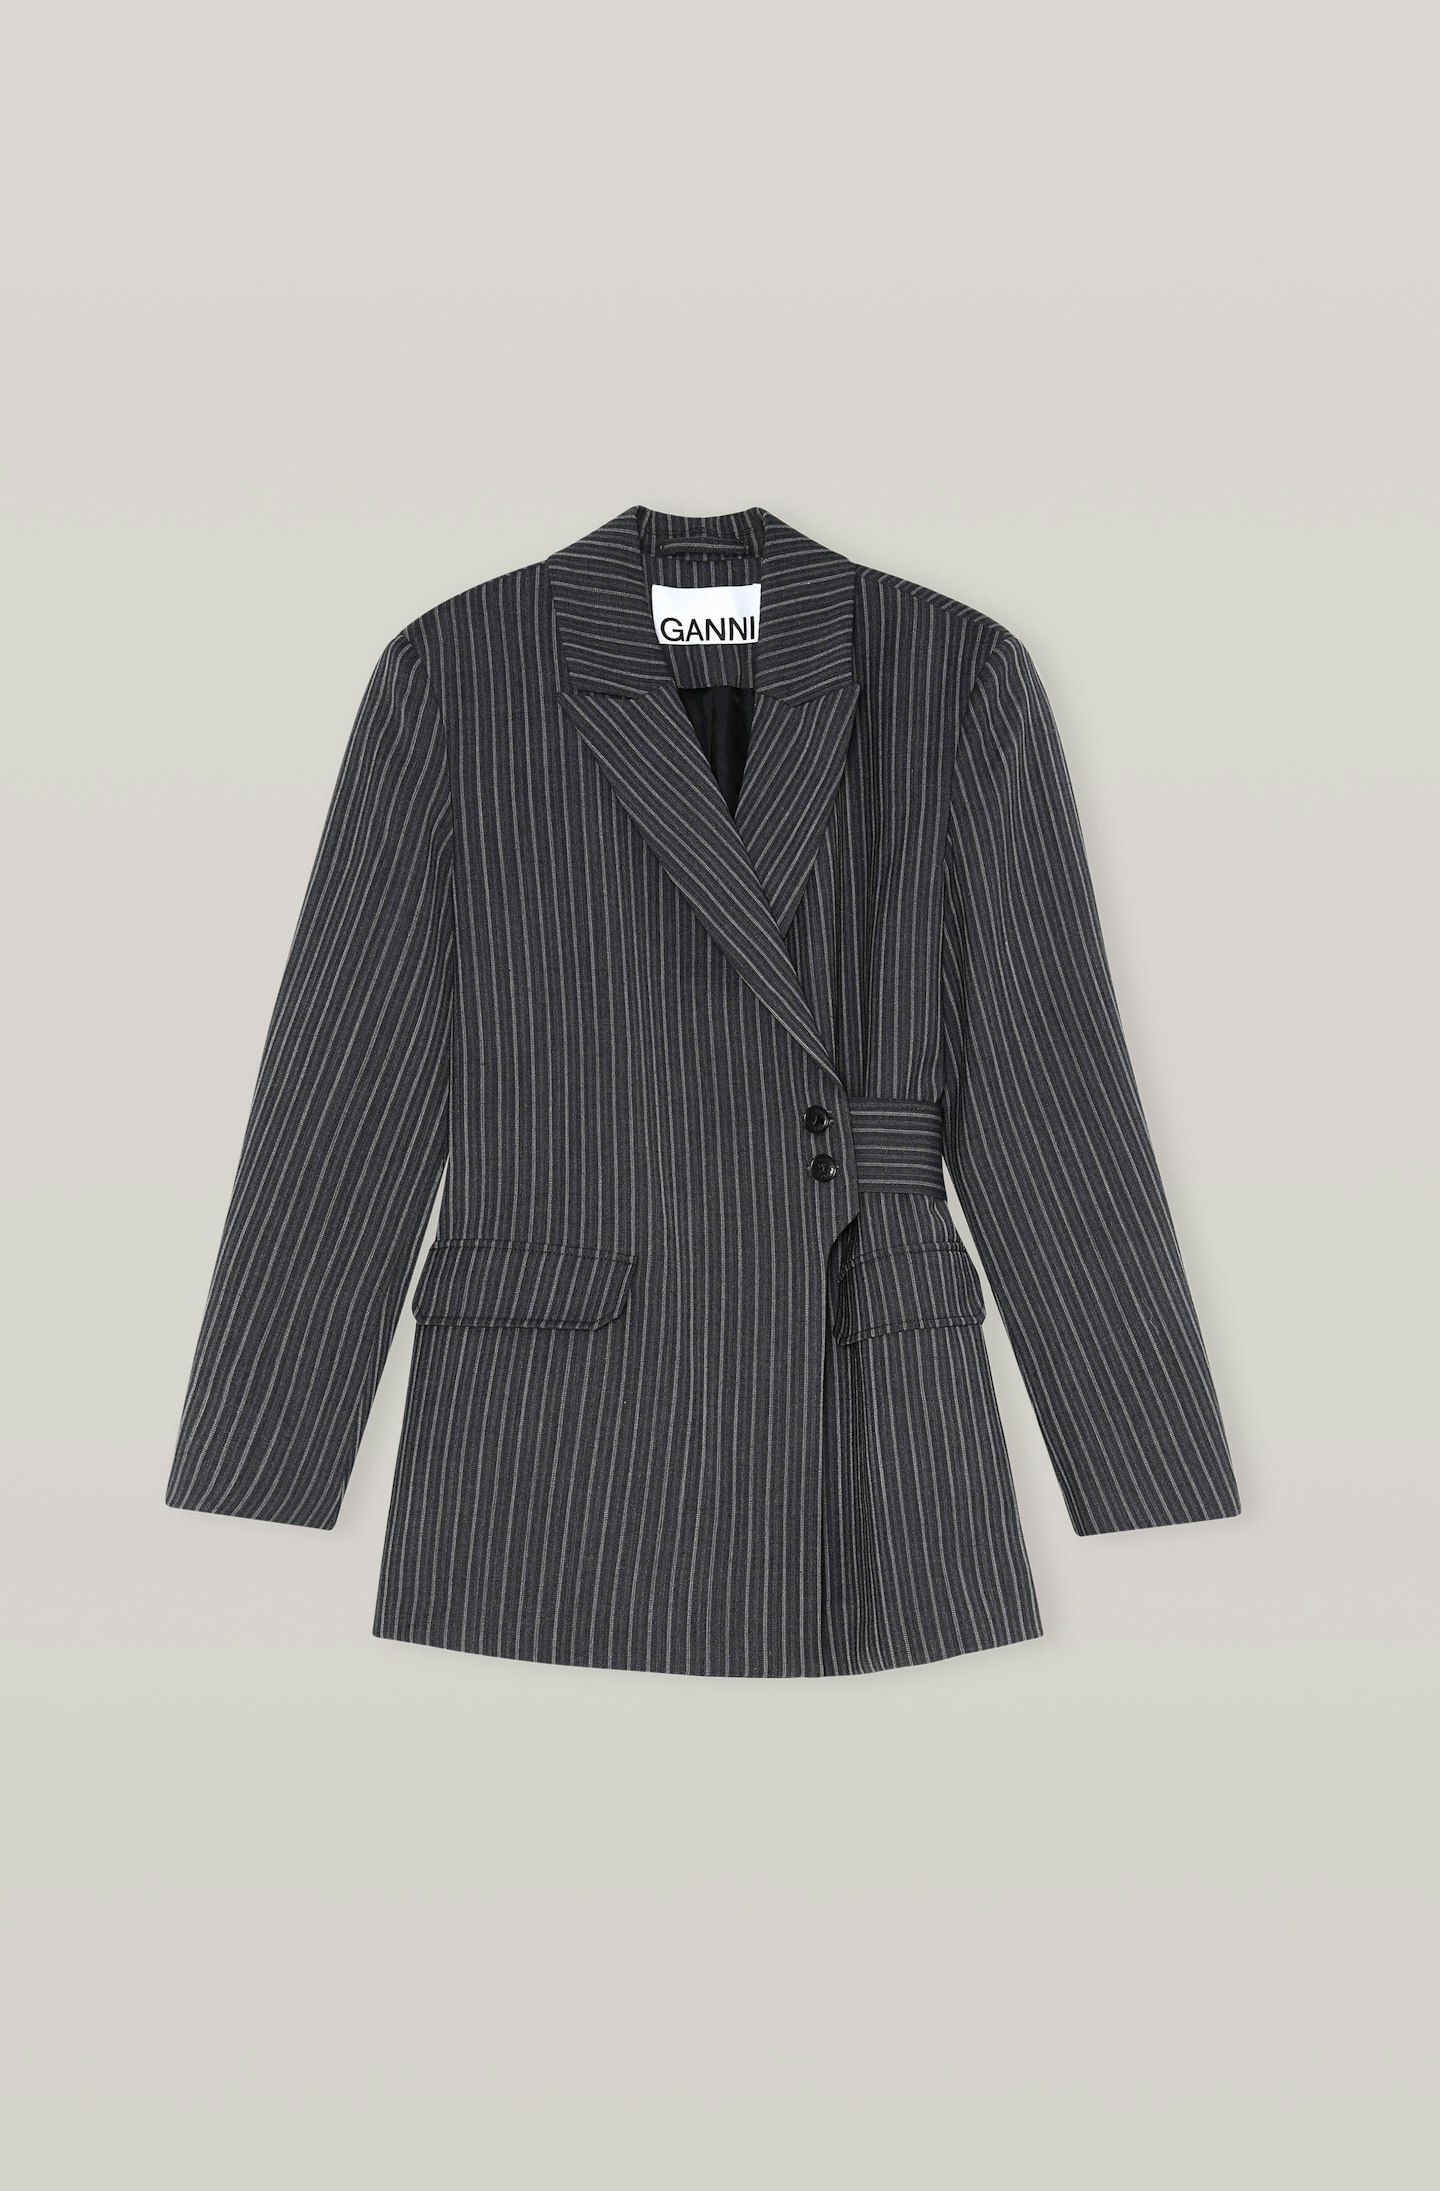 Ganni, Stripe Suiting Blazer, £425